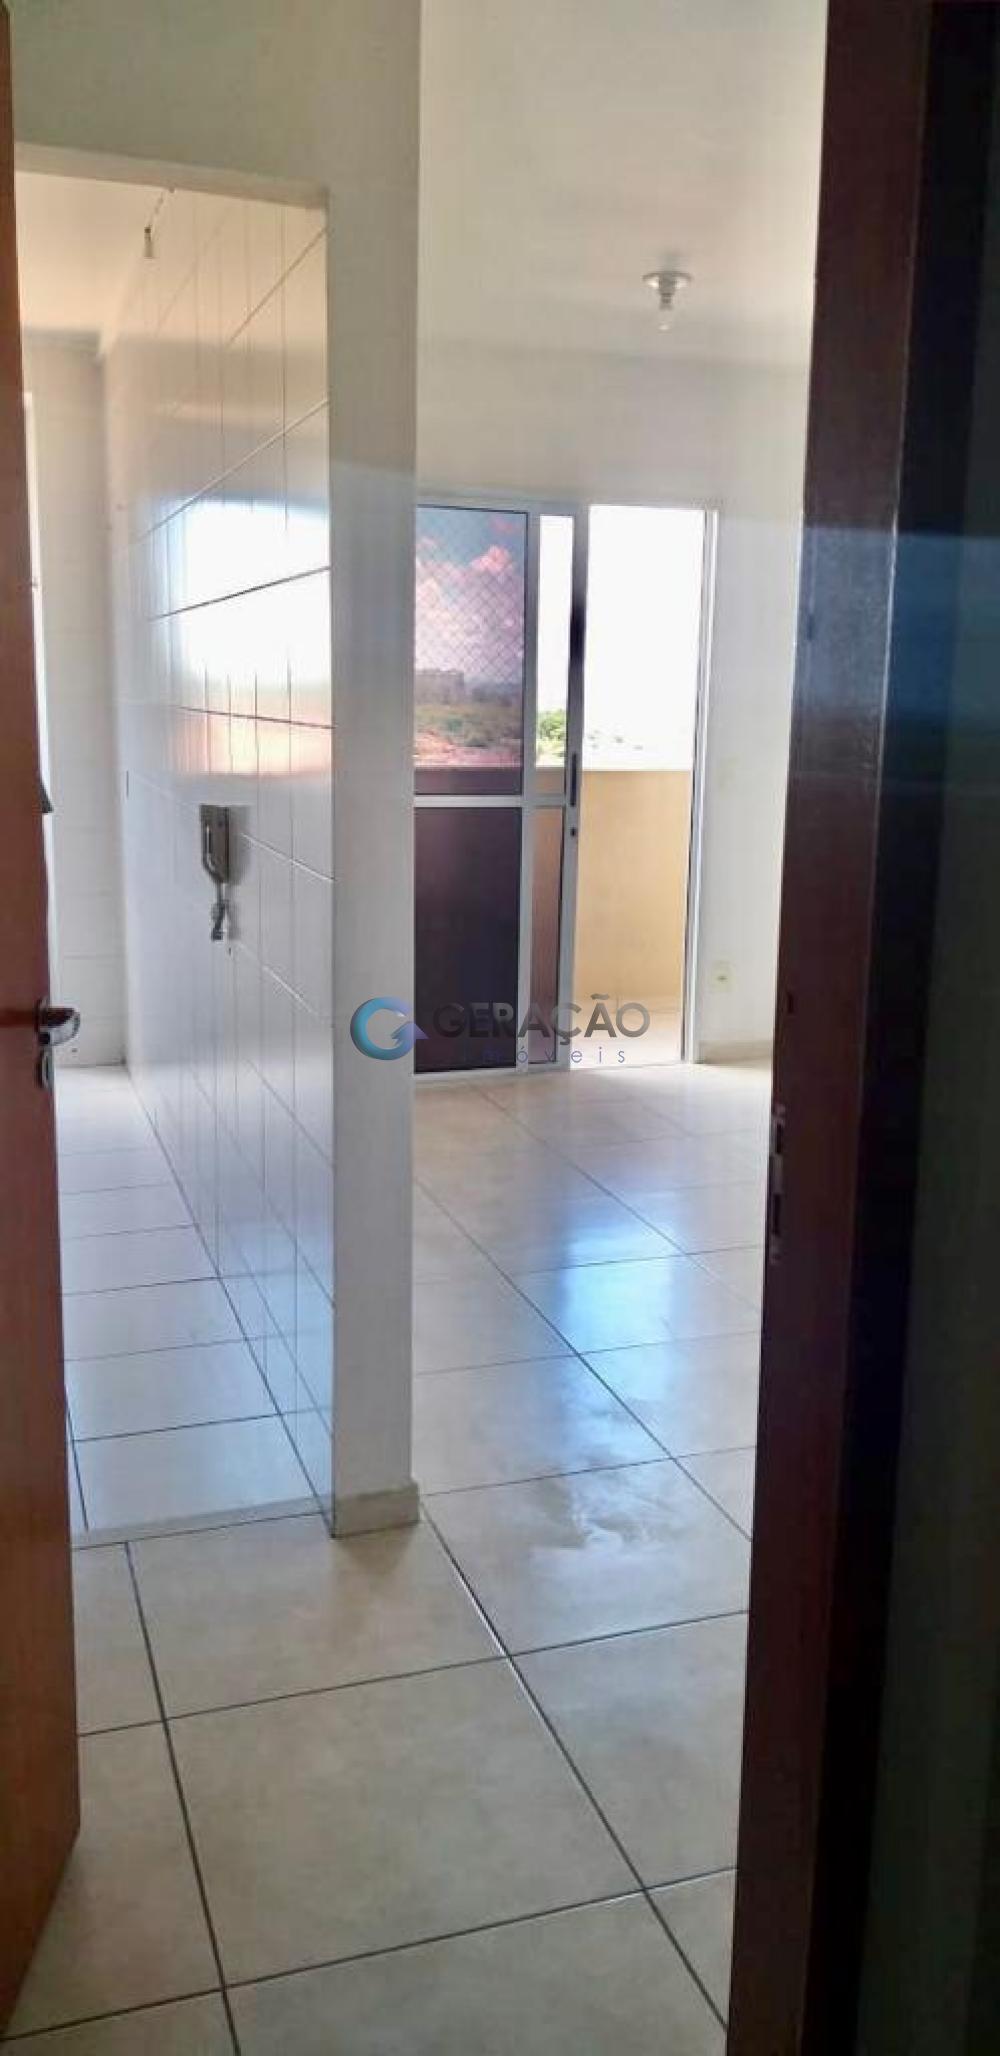 Comprar Apartamento / Flat em São José dos Campos R$ 256.000,00 - Foto 6